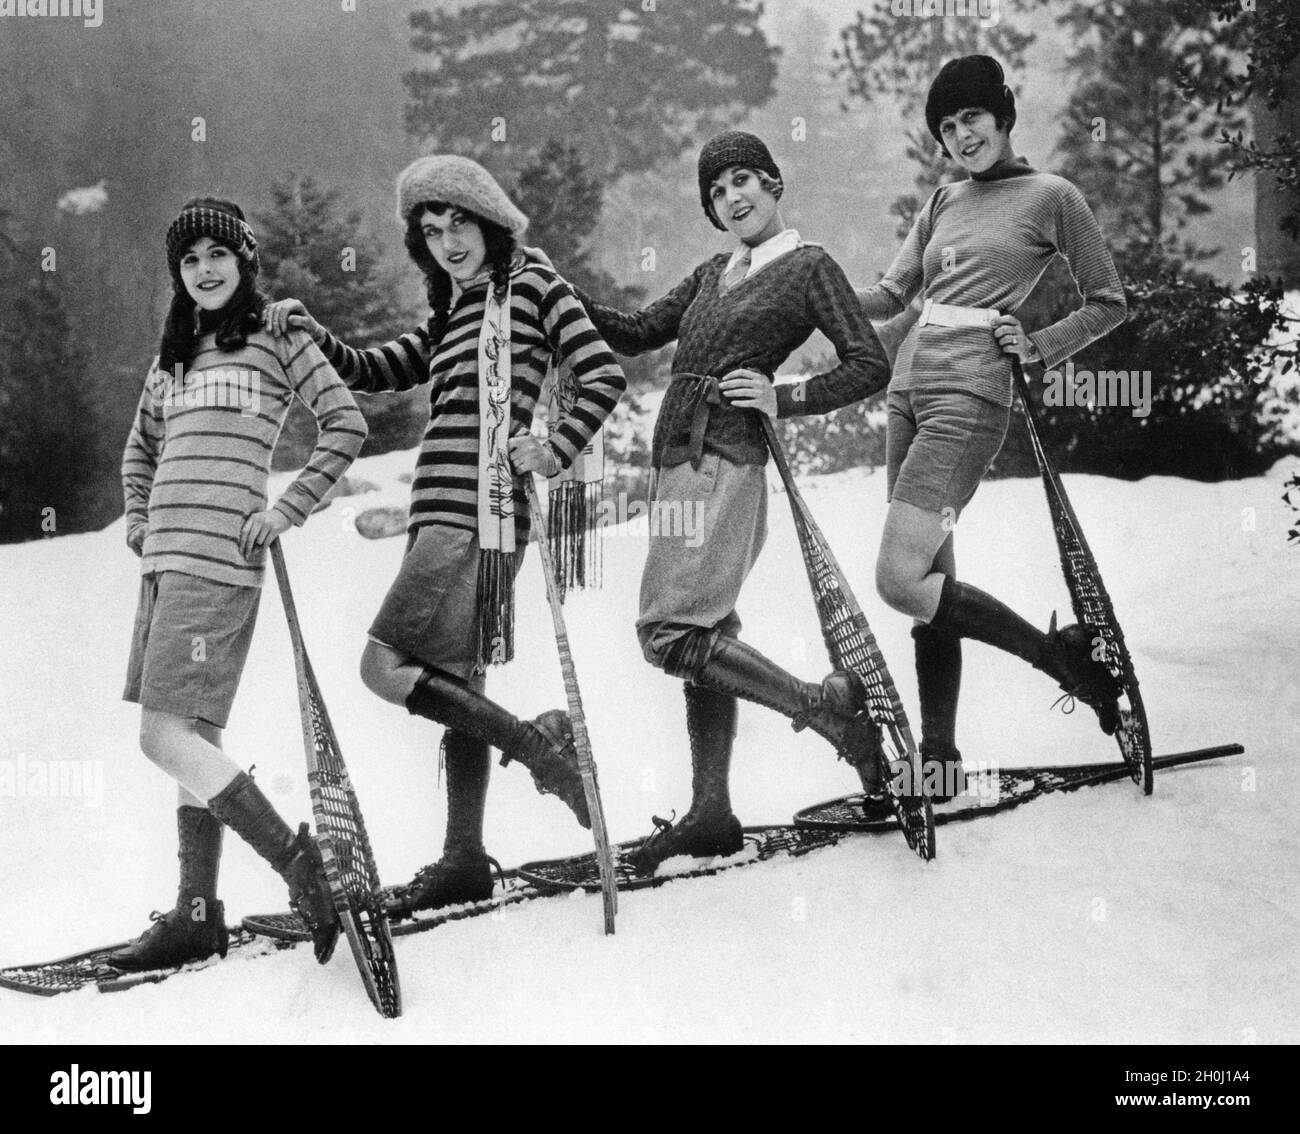 Vier Modelle präsentieren 1926 die Wintersportbekleidung für Frauen.  [Automatisierte Übersetzung] Stockfotografie - Alamy